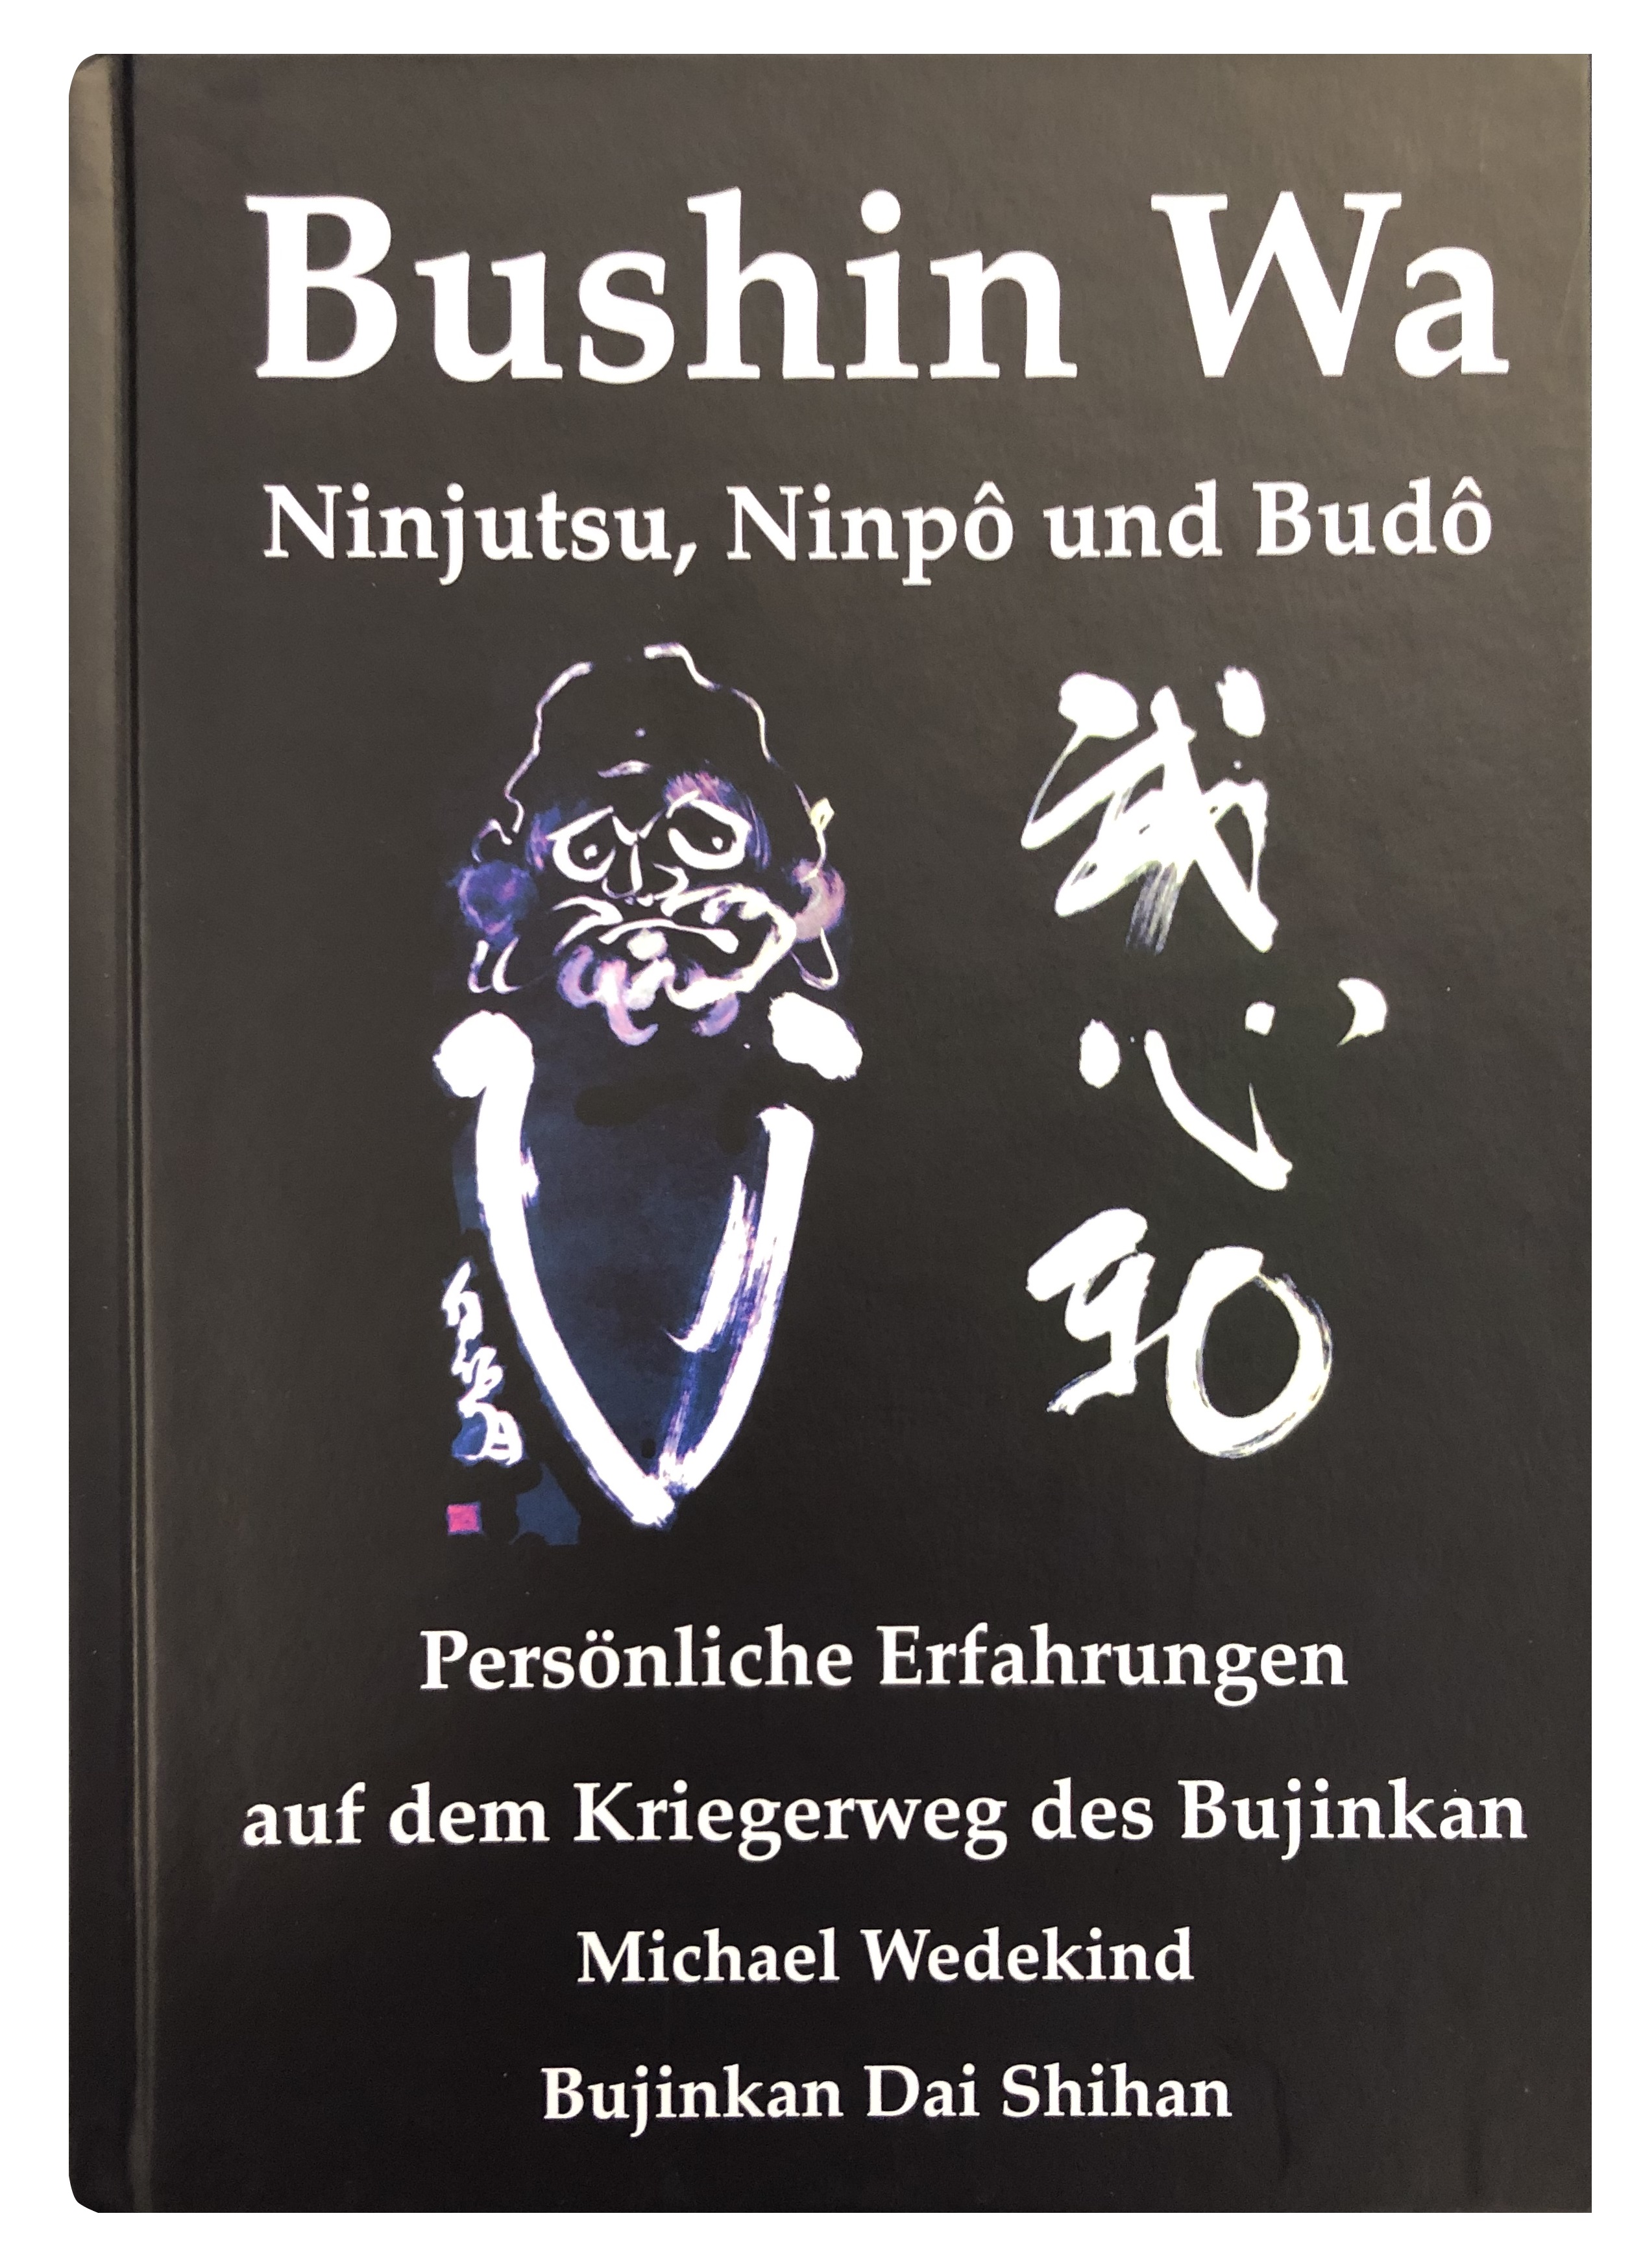 Bushin Wa – Persönliche Erfahrungen auf dem Kriegerweg des Bujinkan (Wedekind, Michael)